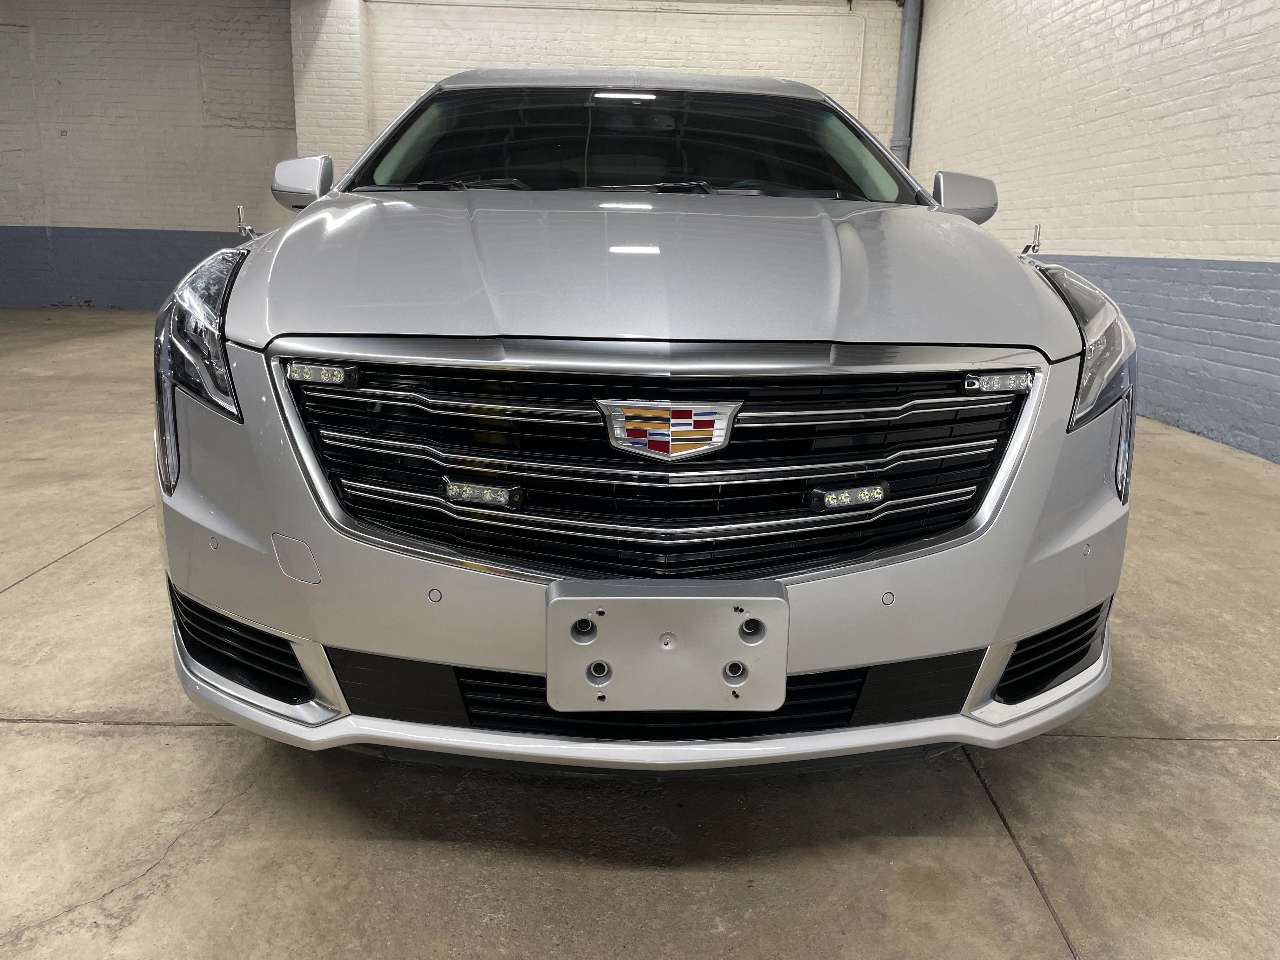 2019 Cadillac Platinum 6 Door Limousine 1690463662118